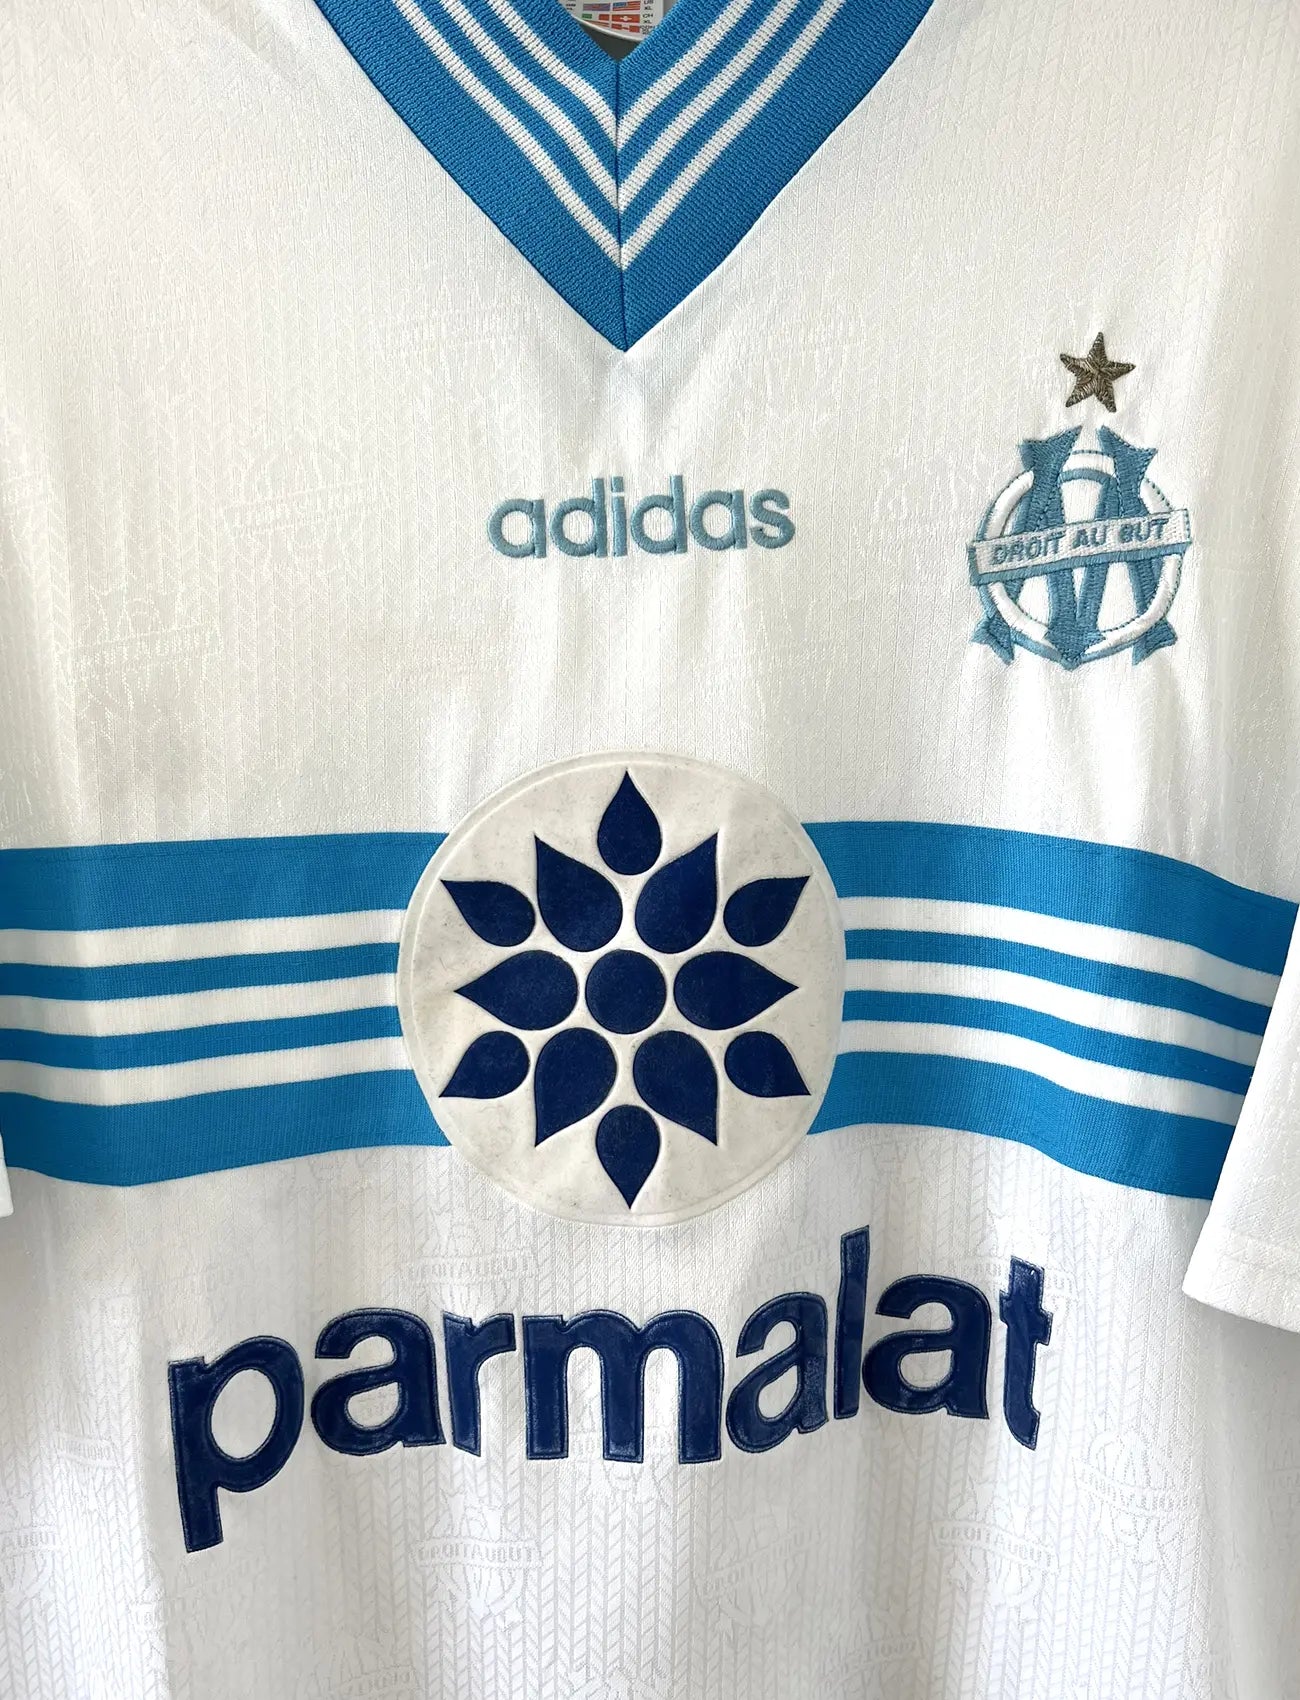 Maillot de foot vintage de l'OM de la saison 1996-1997. Le maillot est de couleur blanc et bleu. On peut retrouver l'équipementier adidas et le sponsor parmalat. Il s'agit d'un maillot authentique